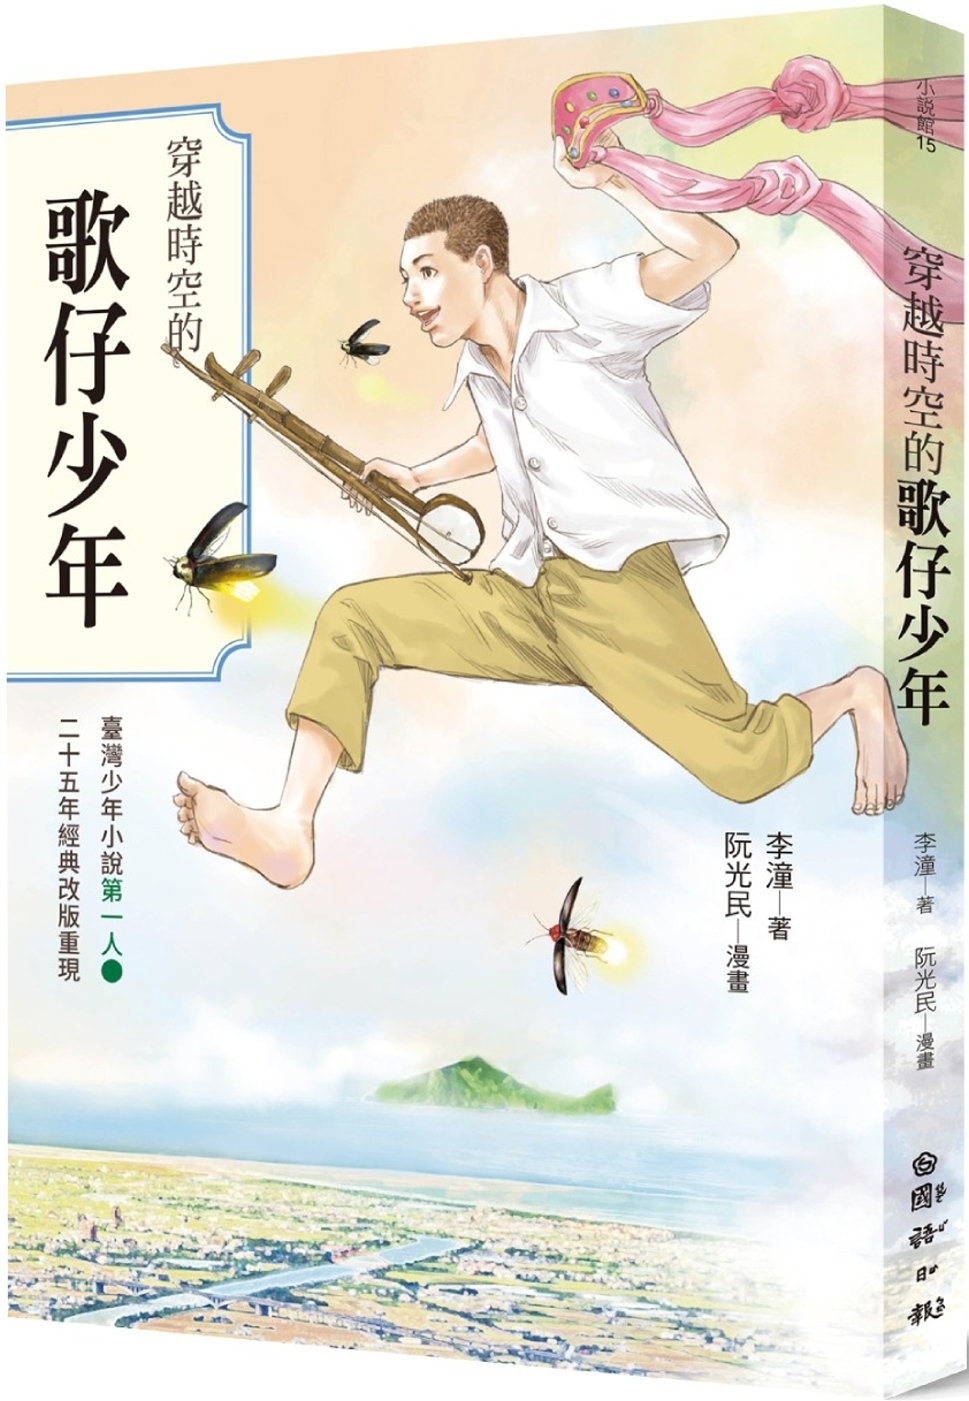 穿越時空的歌仔少年：臺灣少年小說第一人 25週年經典改版重現